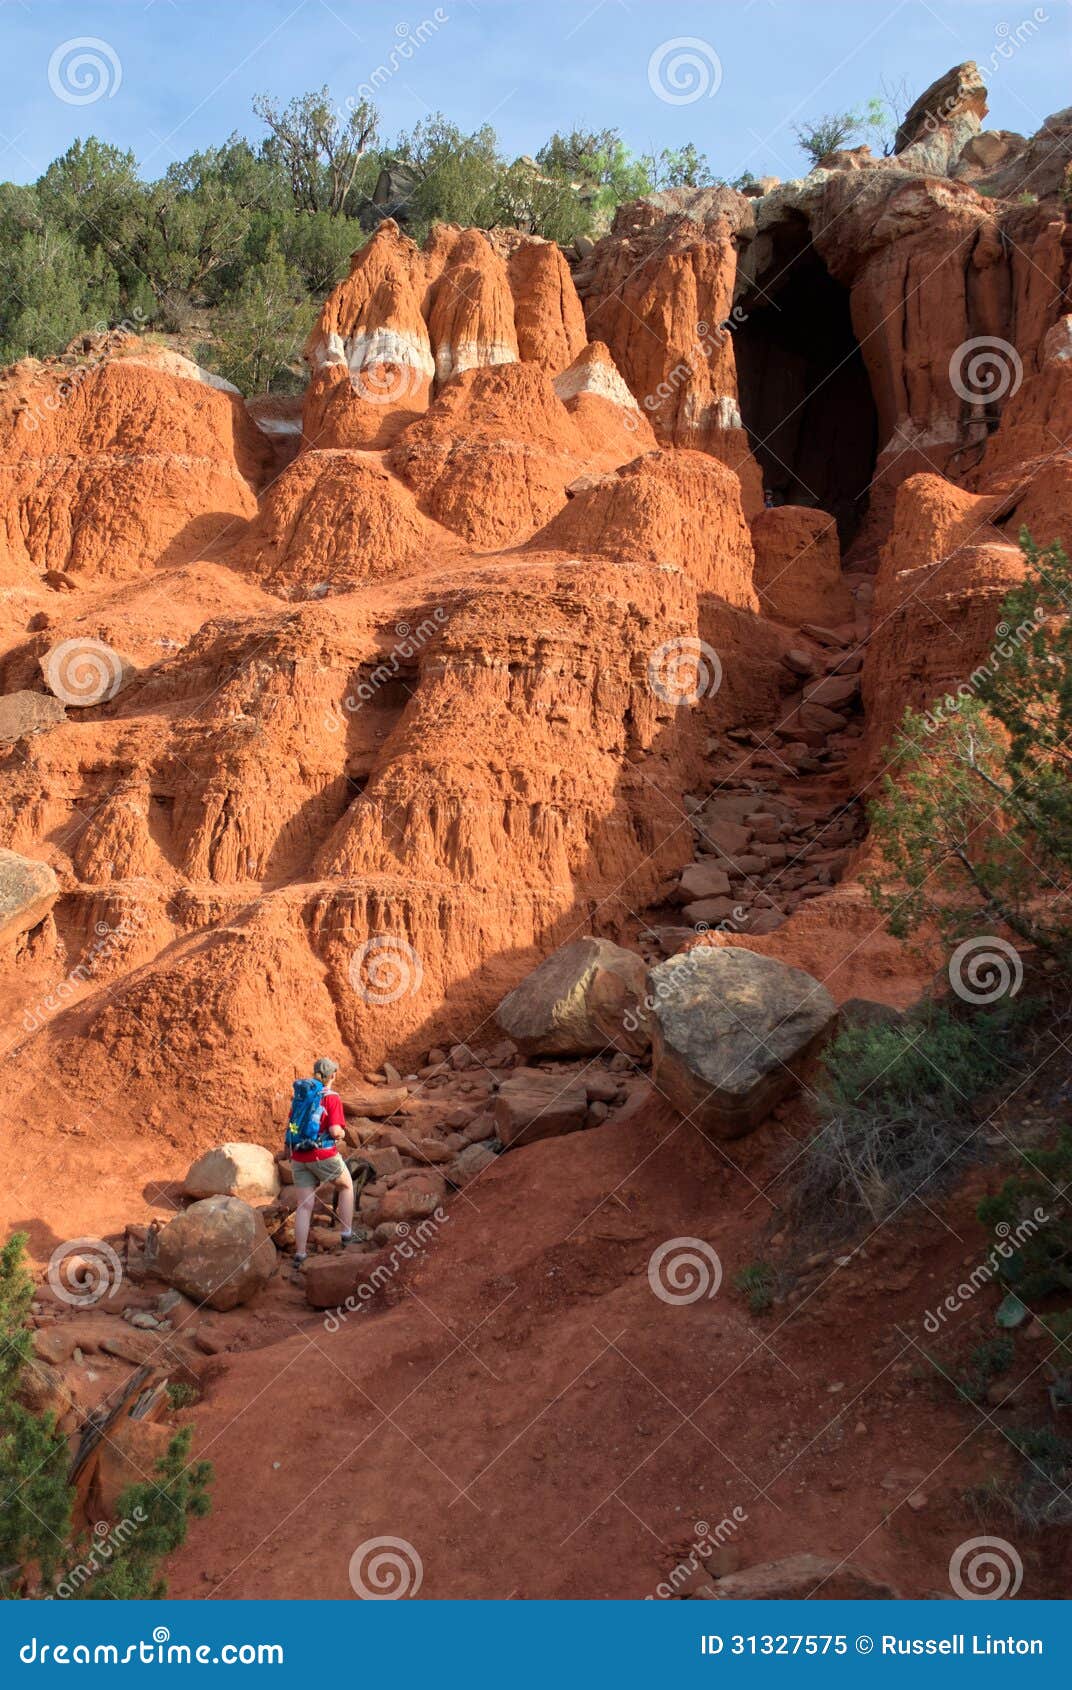 woman hiking in palo duro